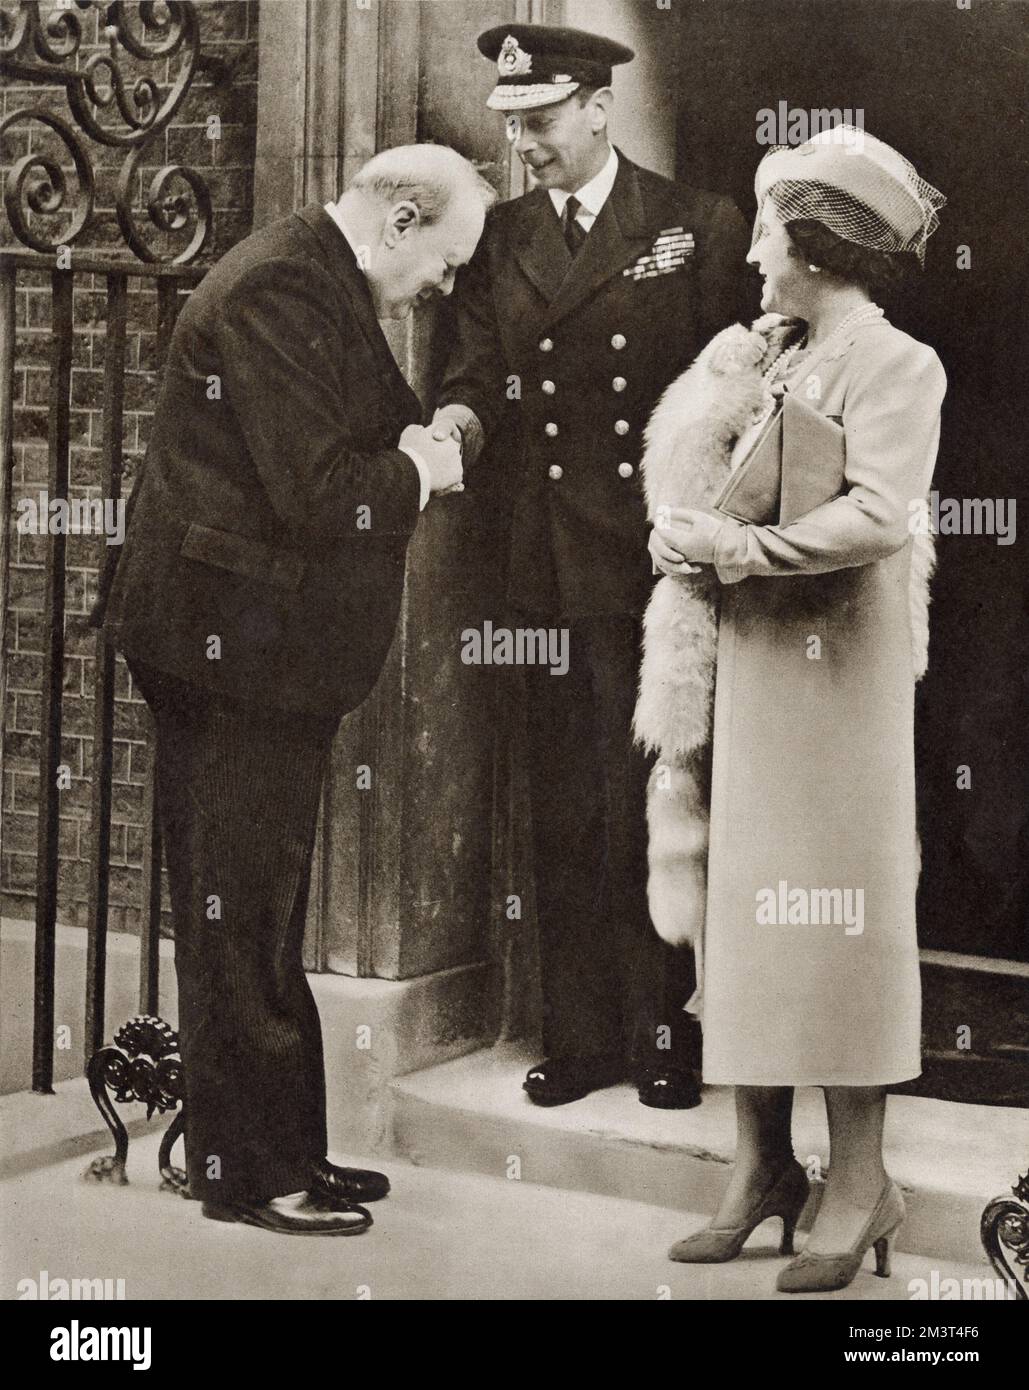 Les trois Grands du Royaume. Le premier ministre Winston Churchill a dit Au revoir au roi George VI et à la reine Elizabeth, alors qu'ils quittèrent le 10, rue Downing après un déjeuner privé. Banque D'Images